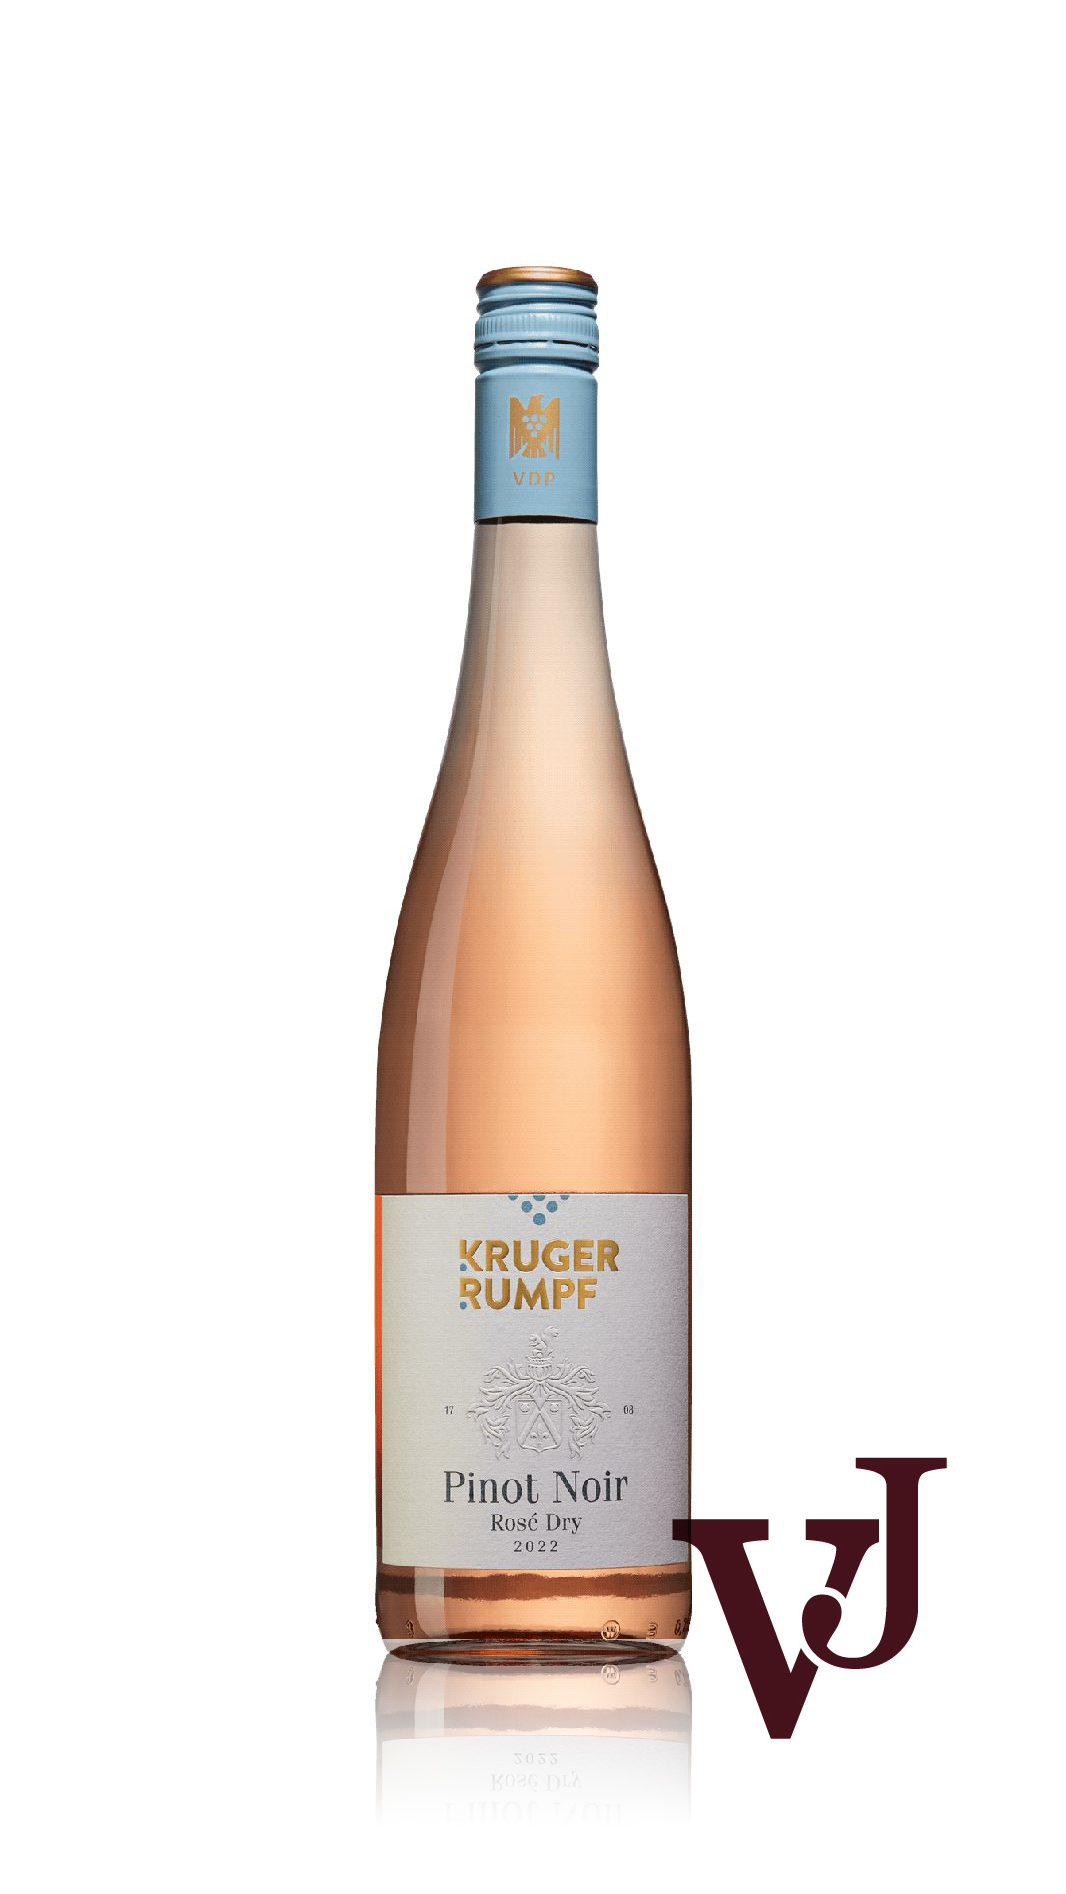 Rosé Vin - Kruger-Rumpf Pinot Noir rosé 2022 artikel nummer 9298001 från producenten ens egna vingårdar.Producent från området Tyskland